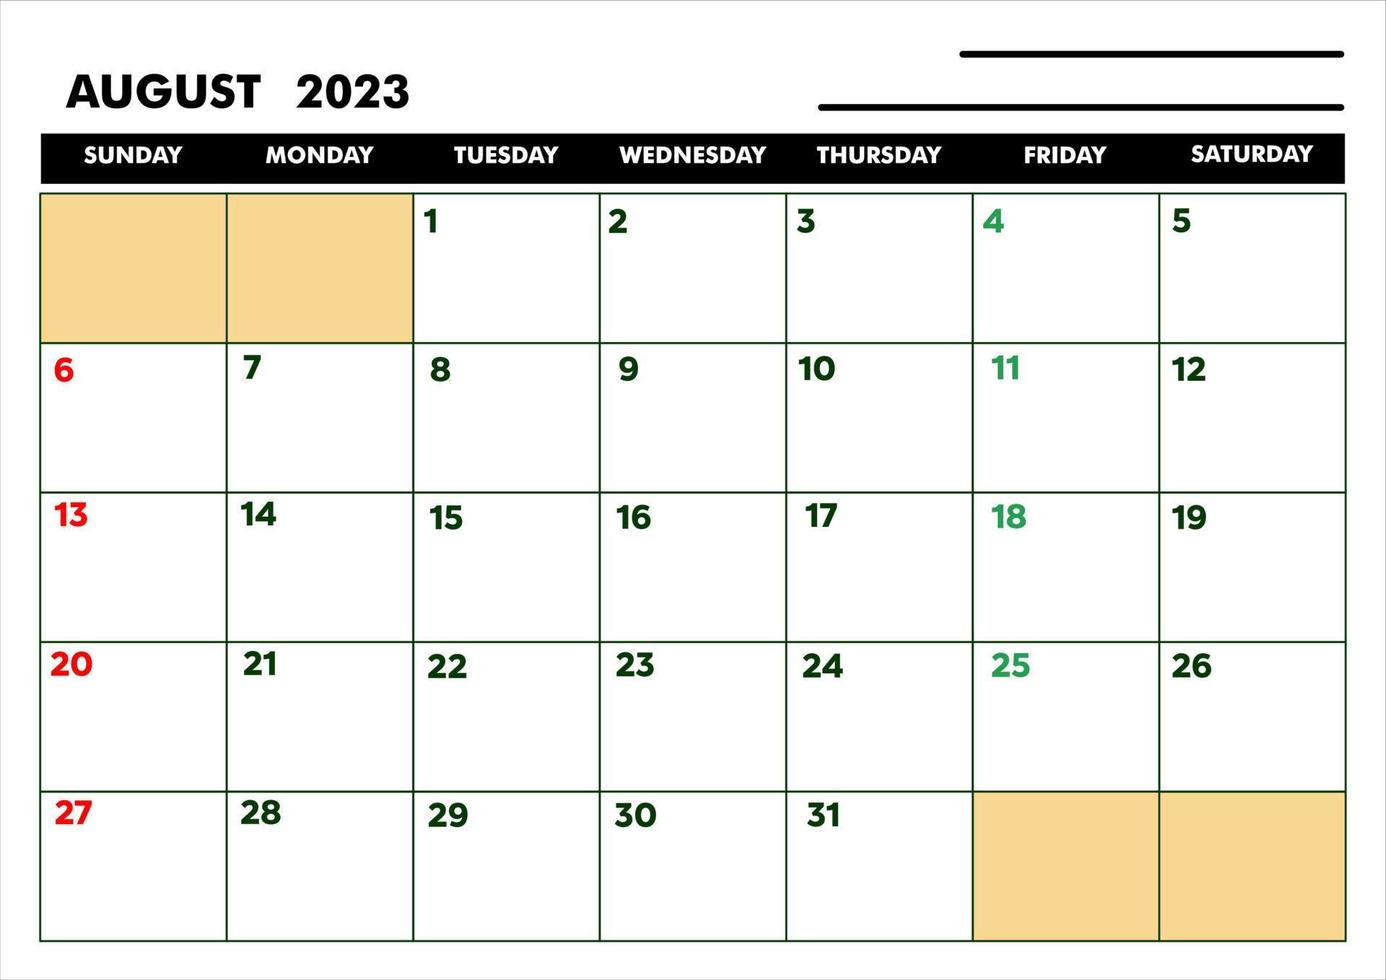 a4 kalender für agenda oder tagebuch august 2023 vektor